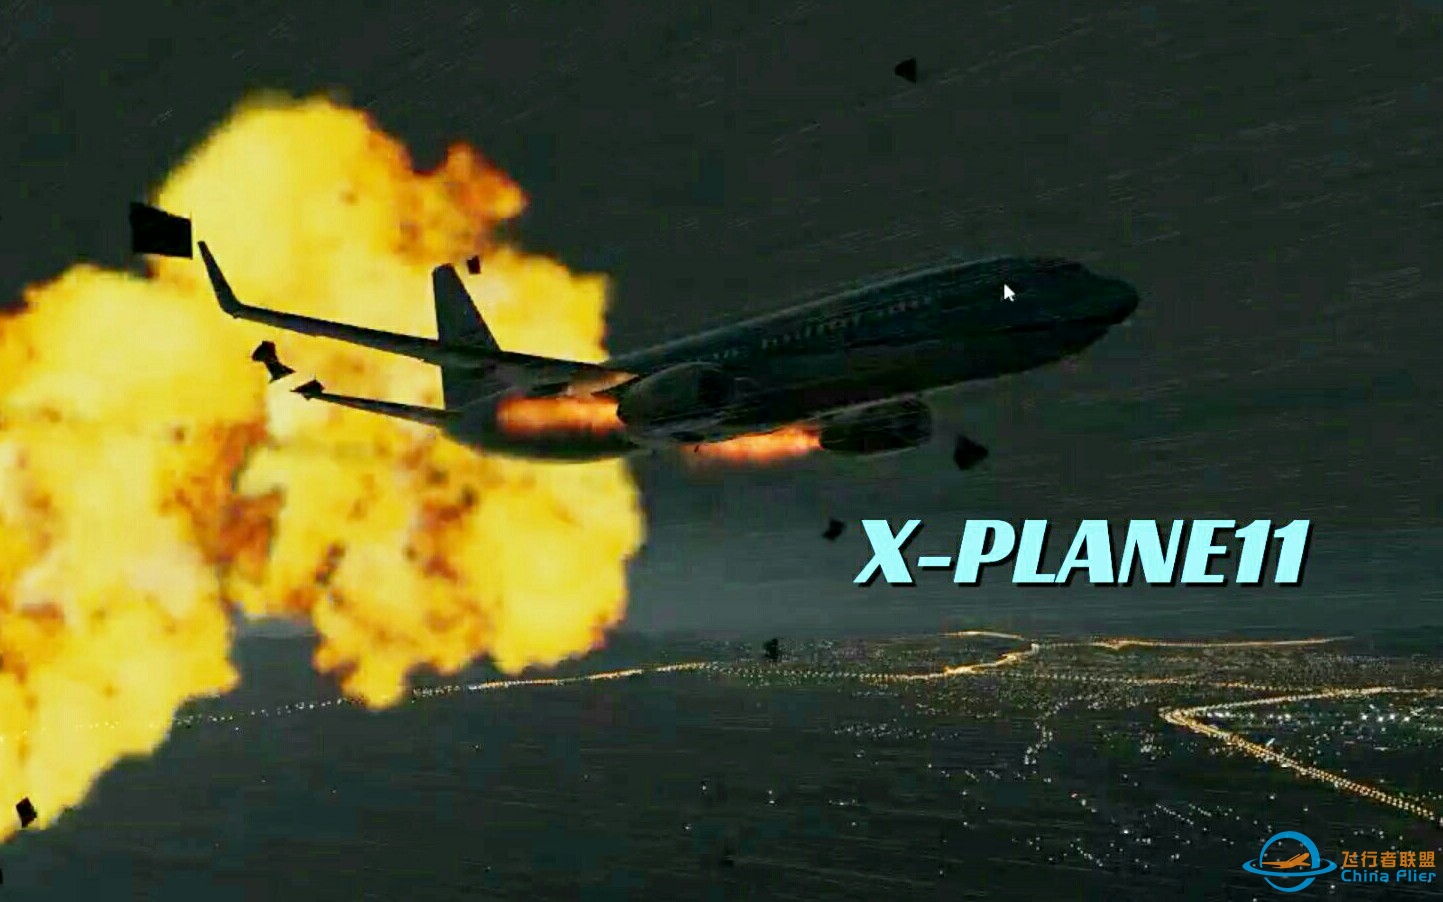 竟被AI机击落了?X-PLANE11入正首飞!-1090 